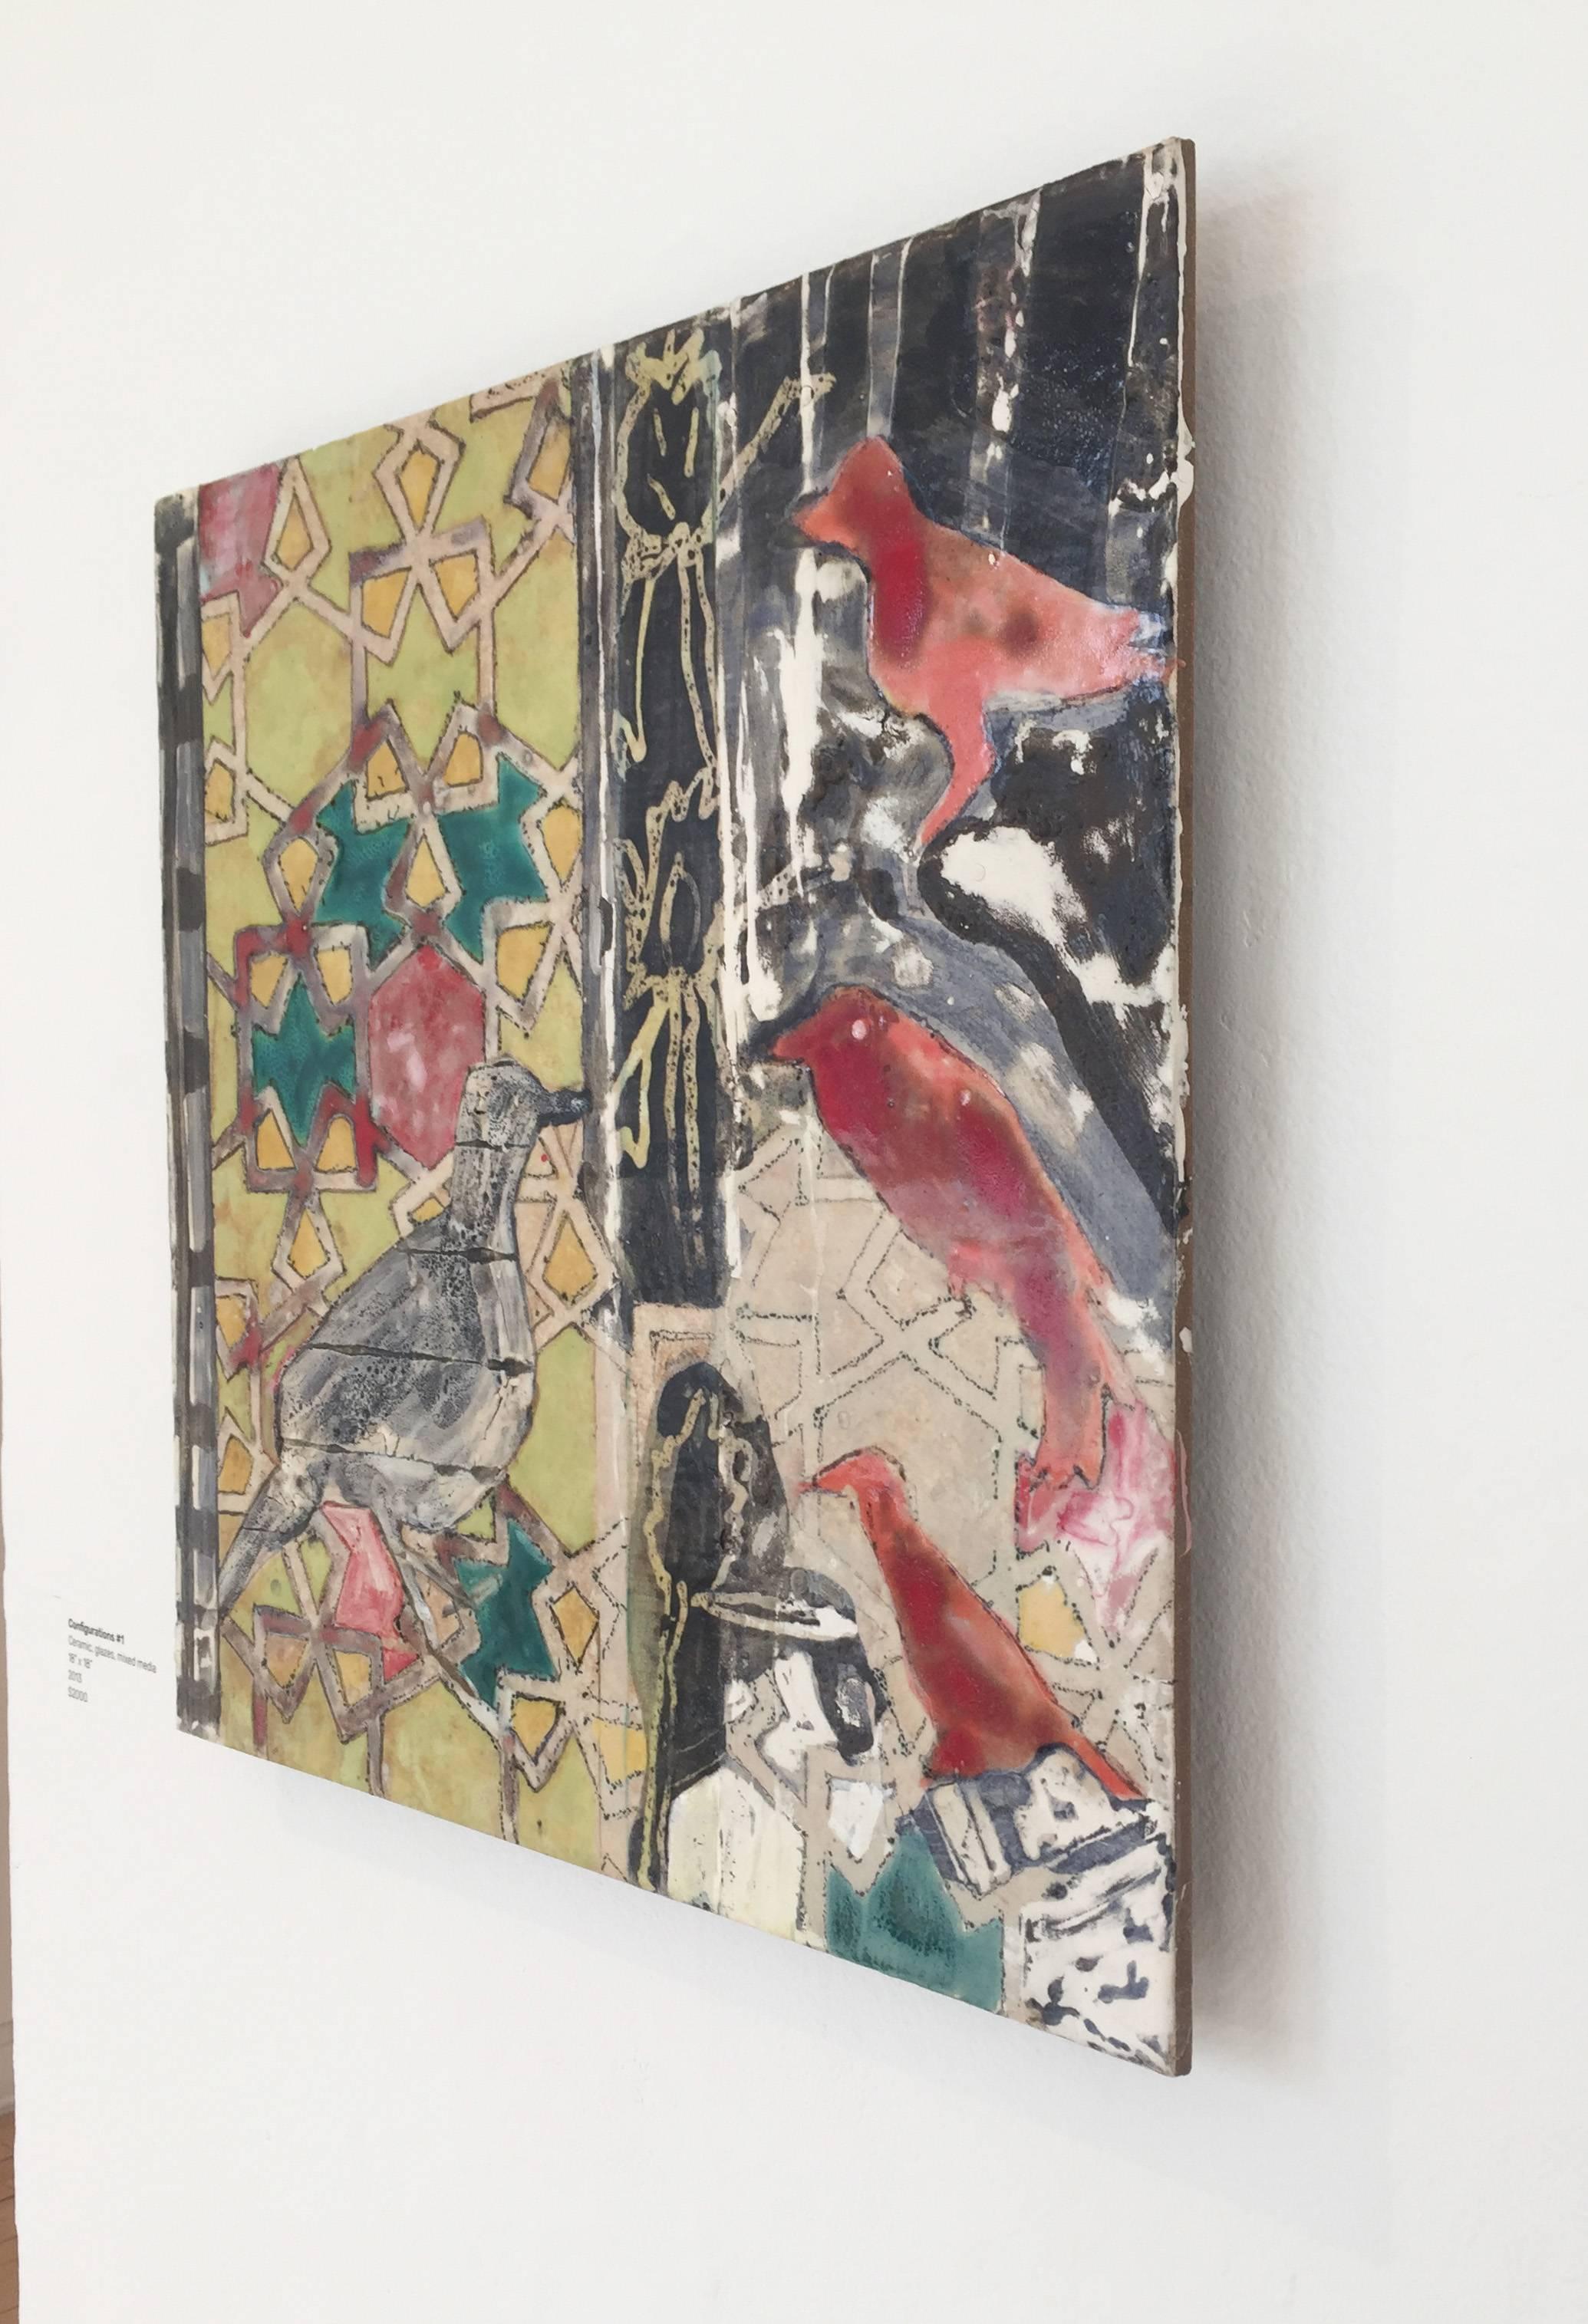 Zeitgenössisches abstraktes Keramikfliesengemälde auf einer Tafel mit roten Vögeln und tealfarbenem Mosaikdesign vor einem lindgrünen, schwarzen und beigen Hintergrund. 
18 x 18 x 1 Zoll
Steingut, keramische Glasuren auf Platte

Diese einzigartige